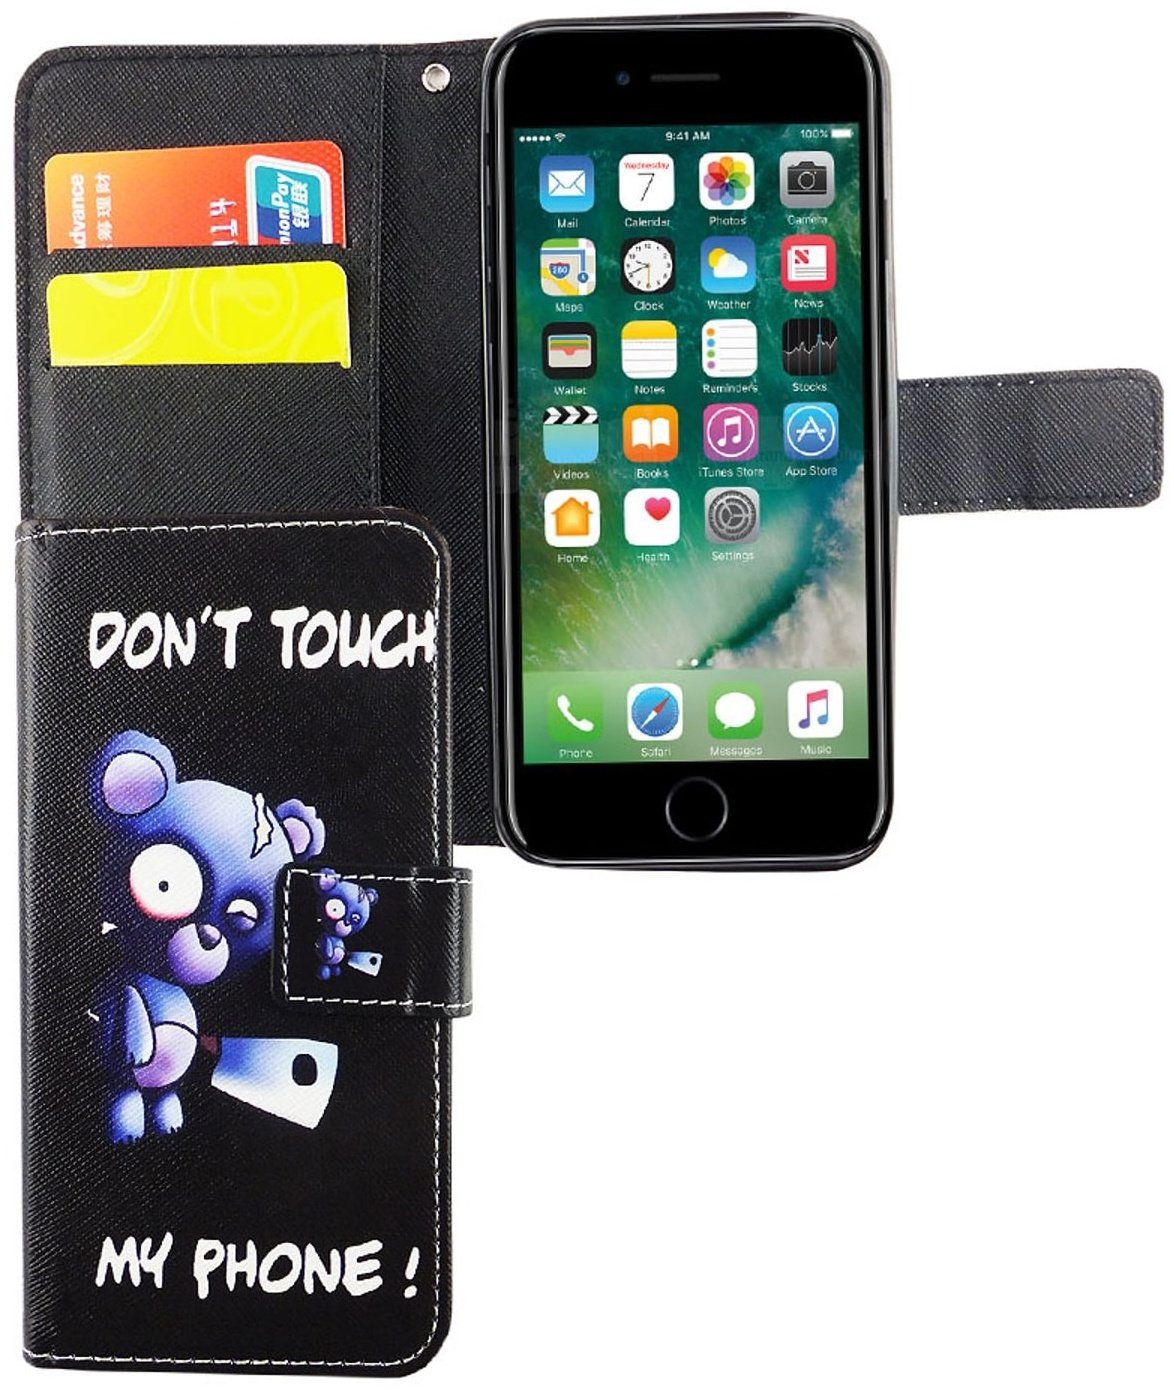 Hülle Handy Schutz für Apple iPhone 6 / 6s Case Cover Tasche Wallet Etui Bumper